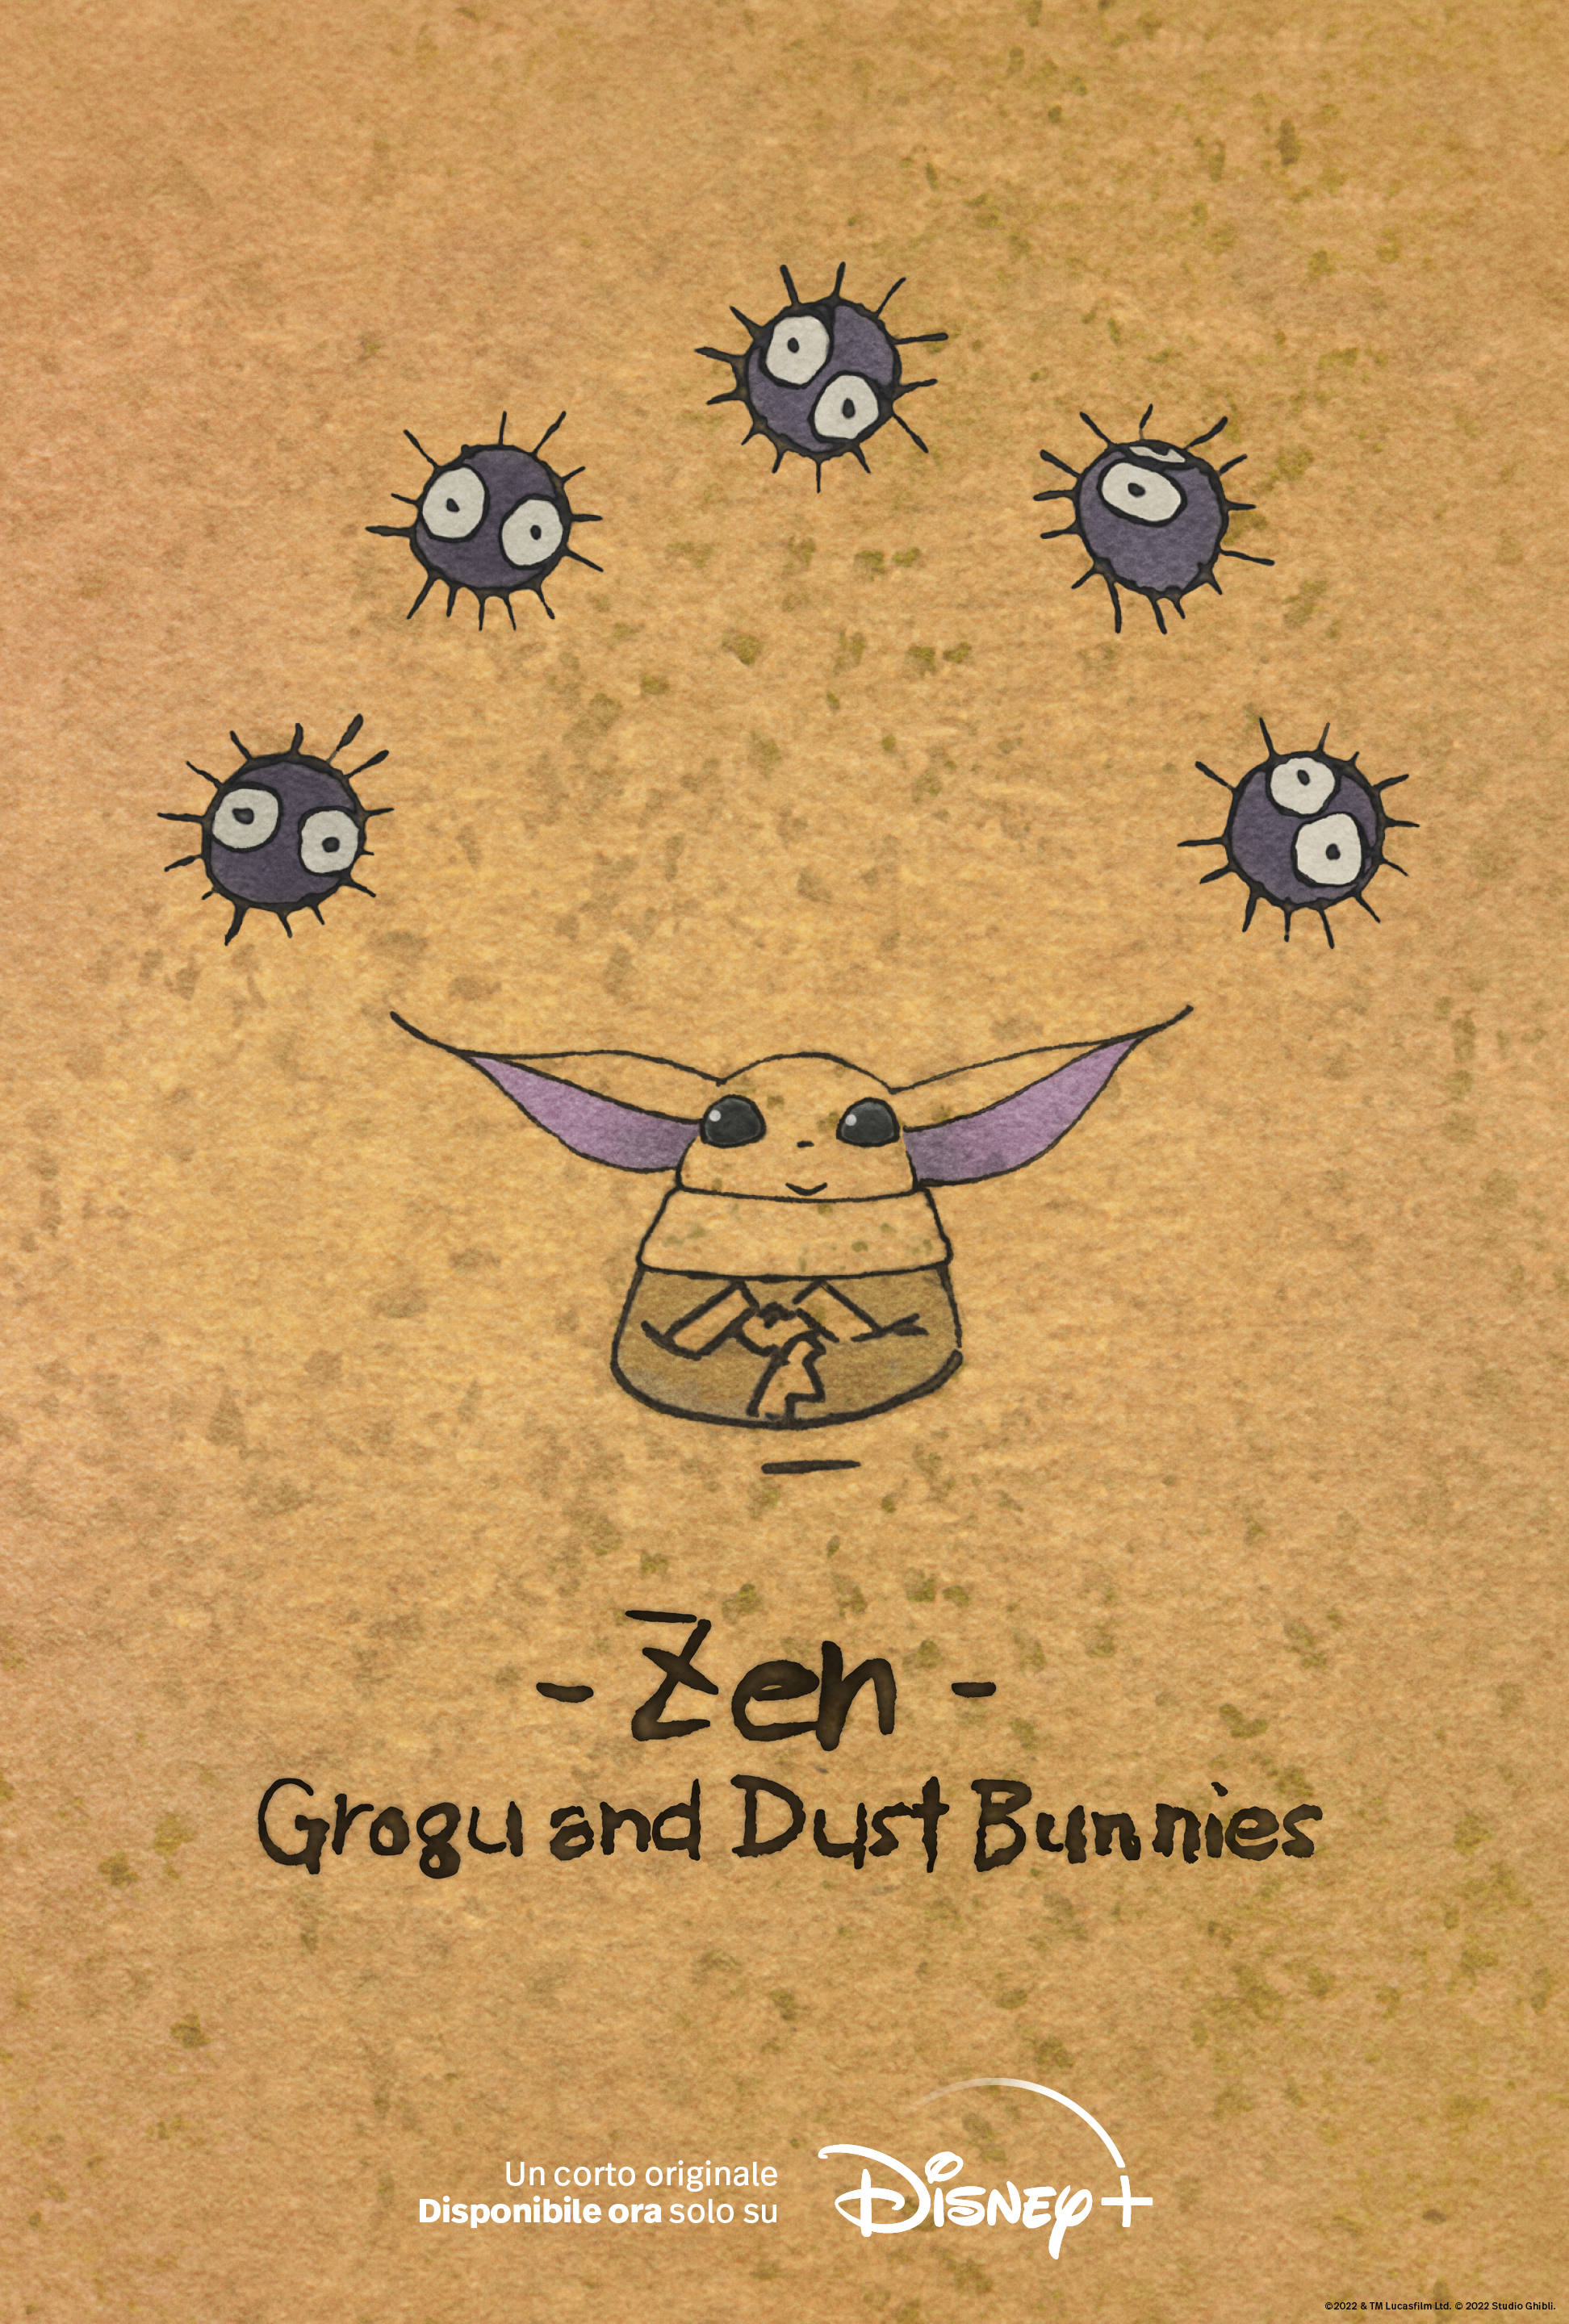 la key art di zen grogu and dut bunnies - nerdface